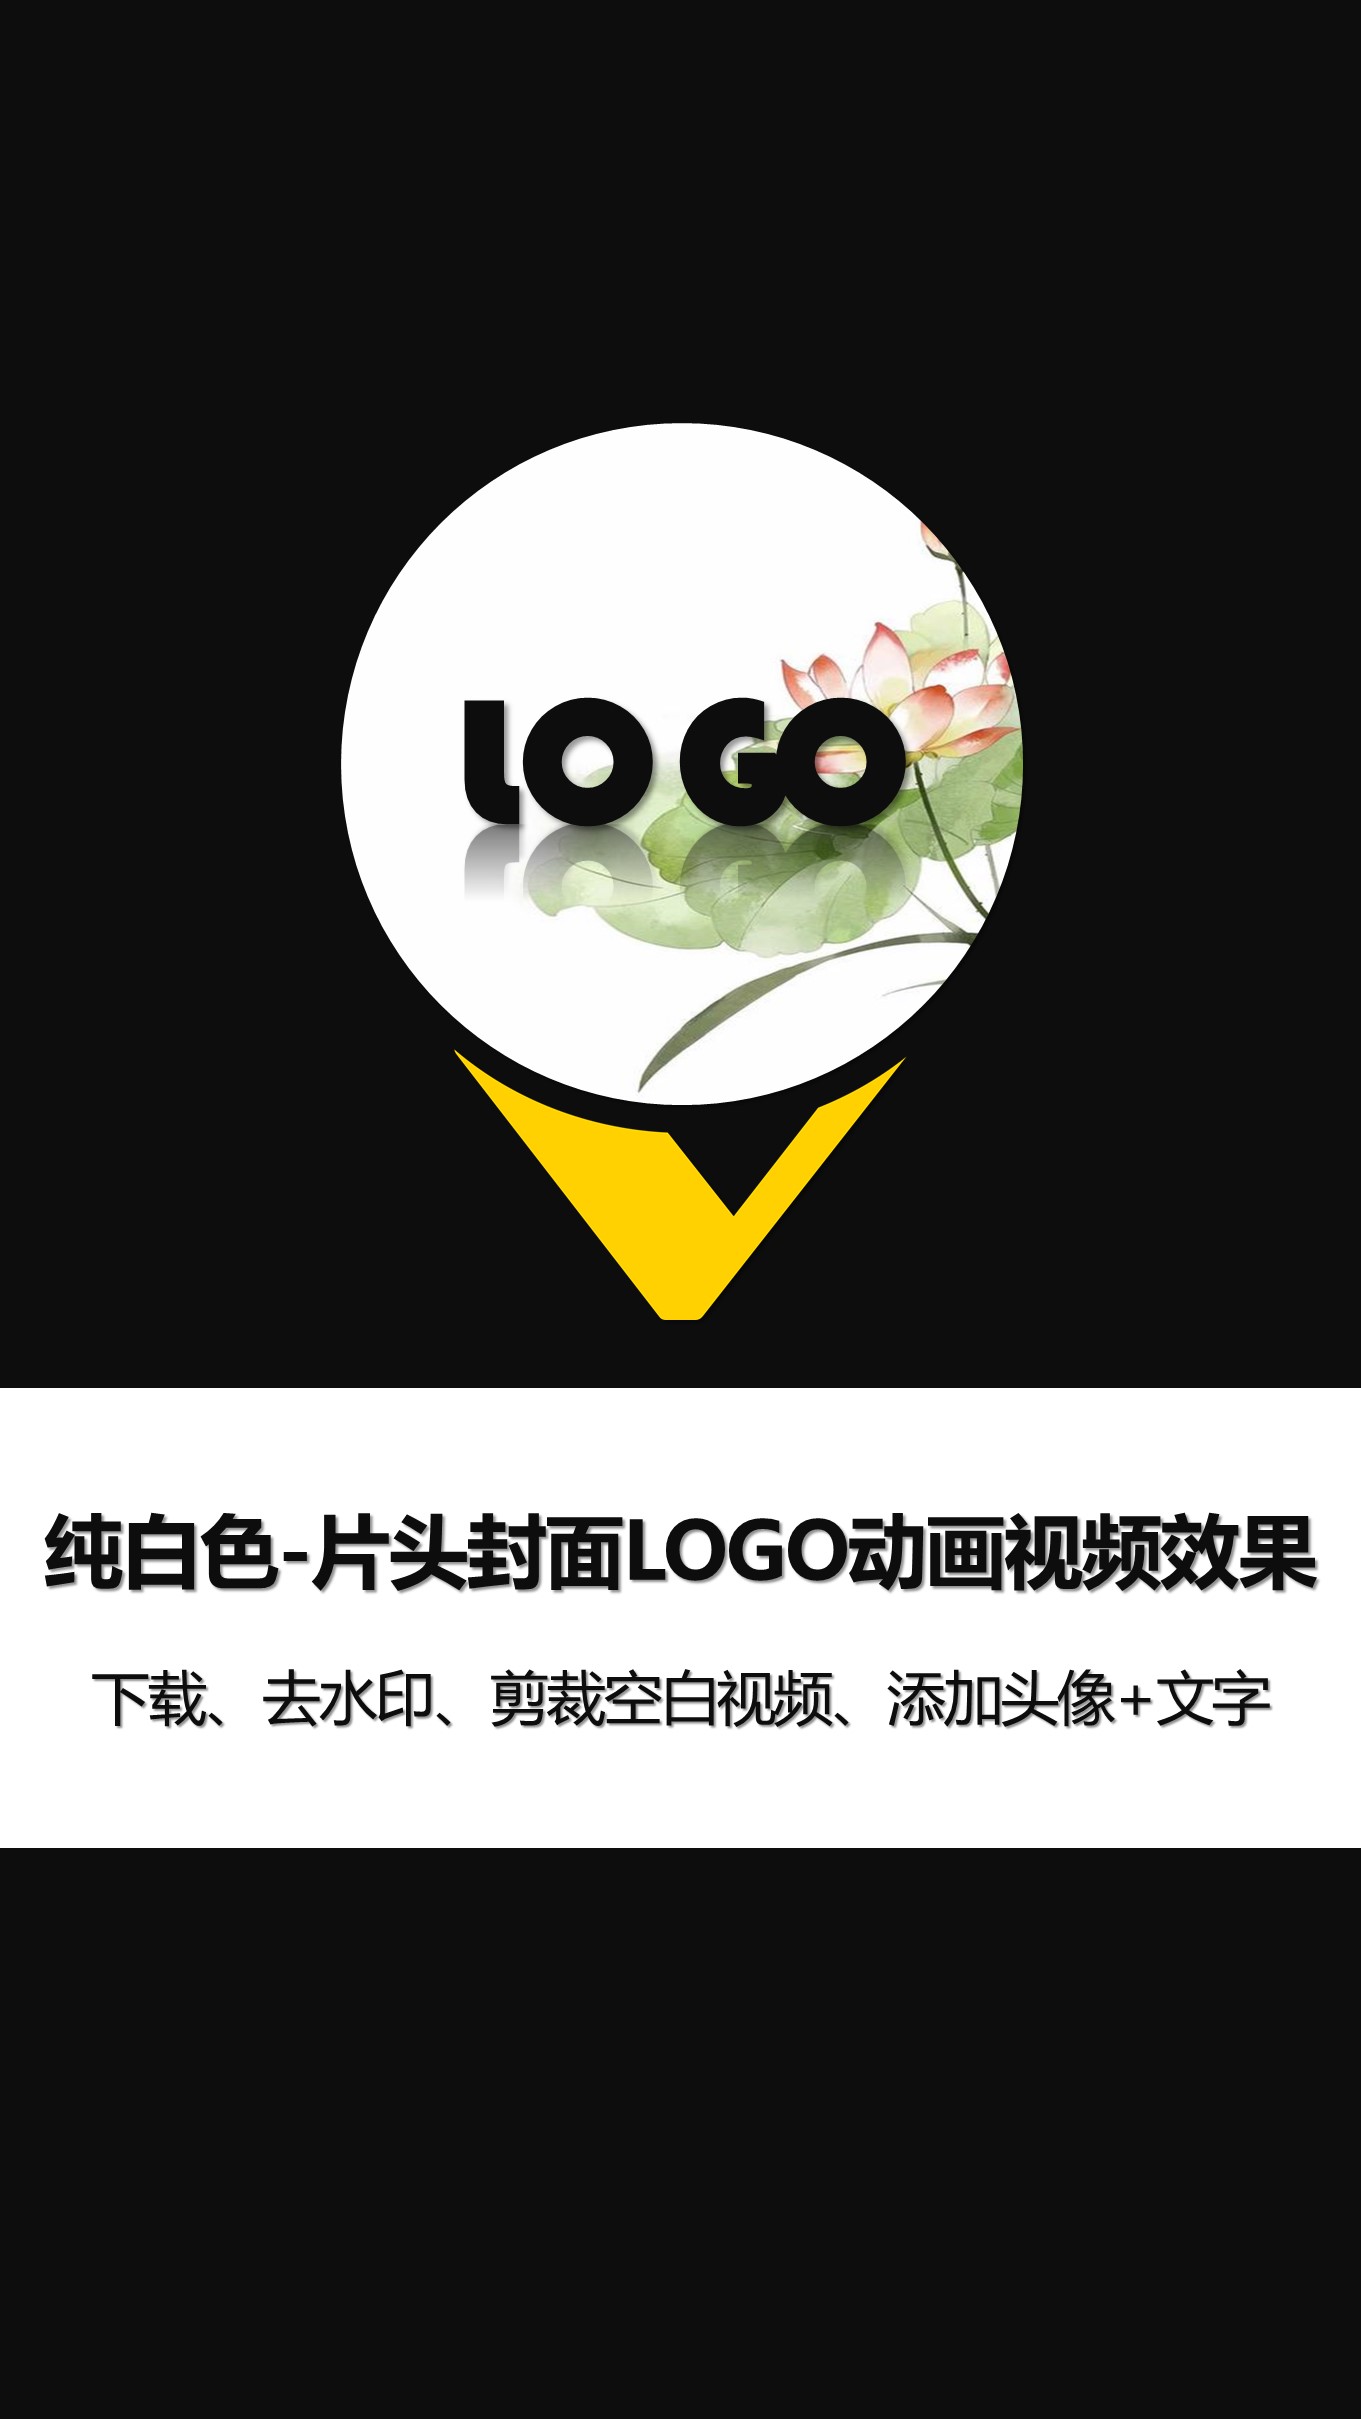 0-2纯黑色片头片尾封面LOGO动画竖版 (4).JPG